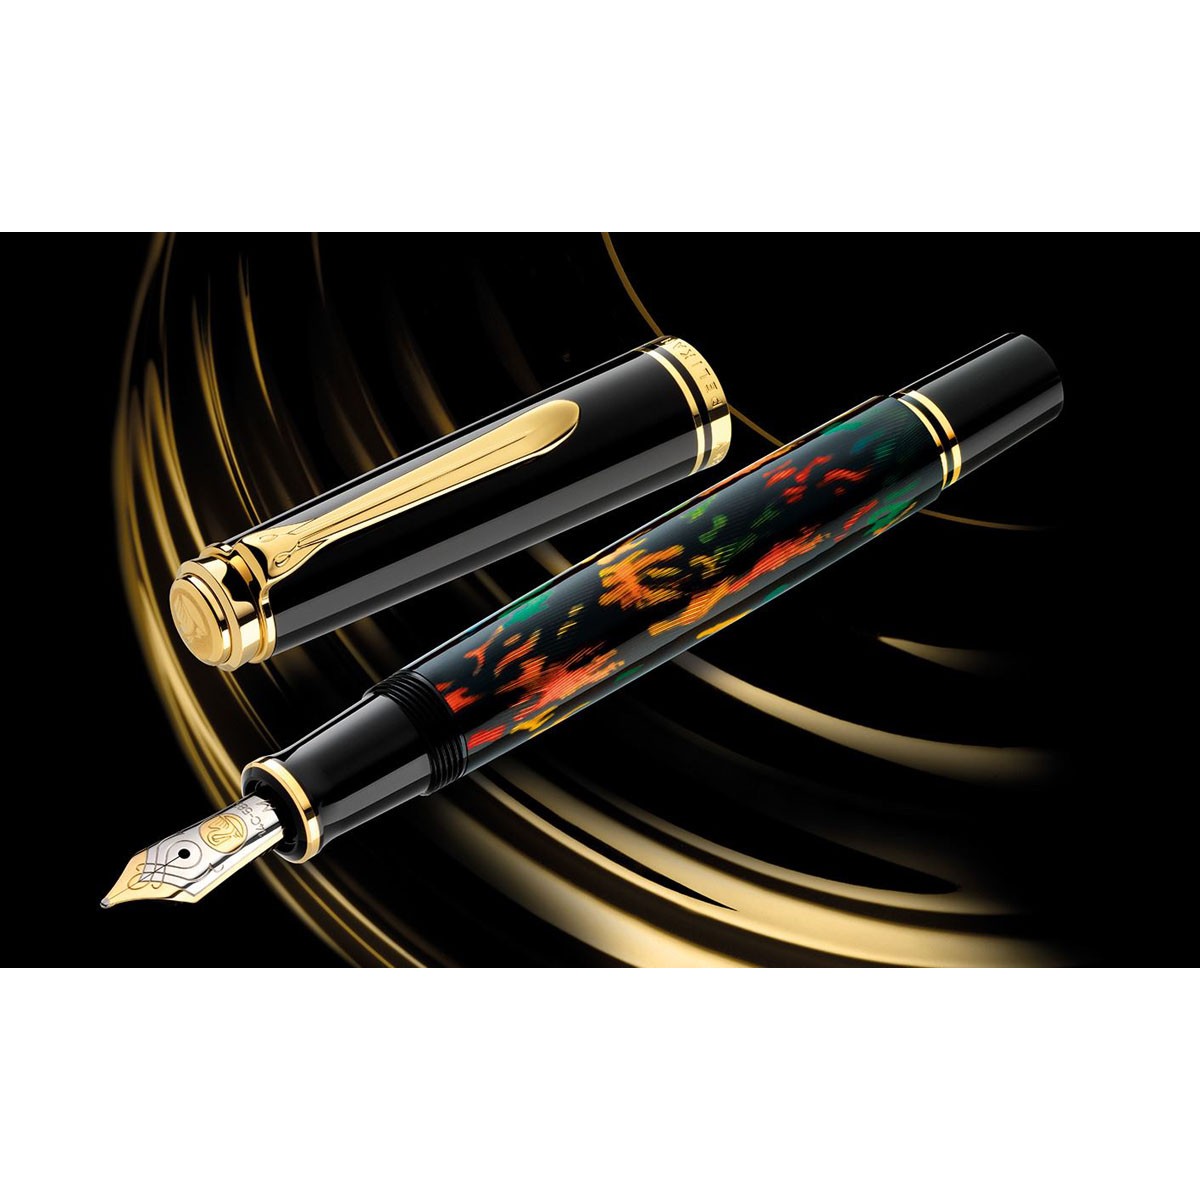 Pelikan - Art Collection - Glauco Cambon 2023 - Fountain Pen